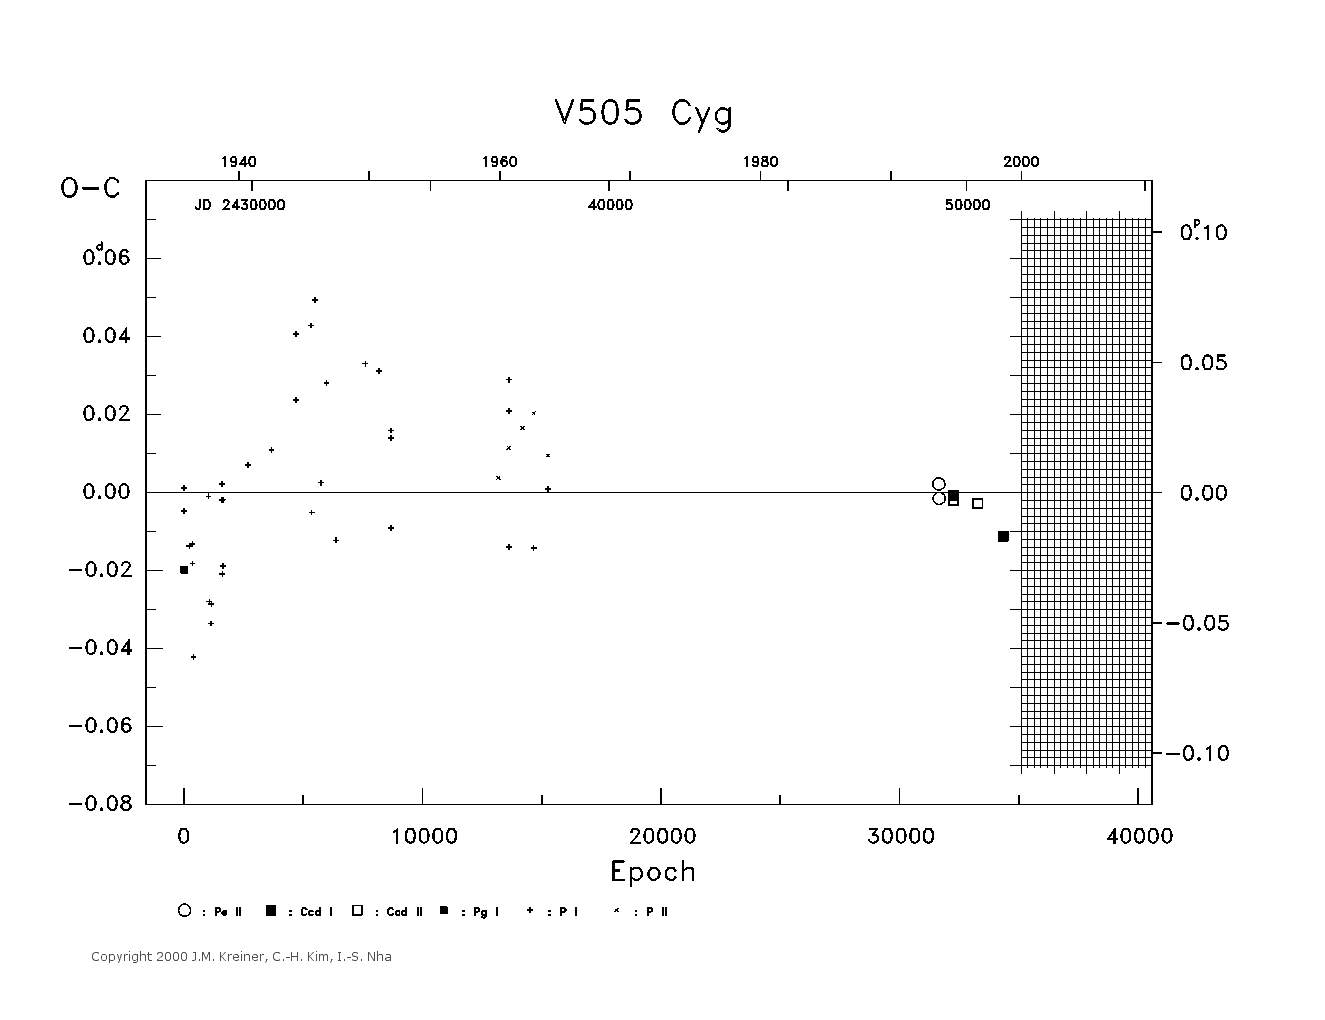 [IMAGE: large V505 CYG O-C diagram]